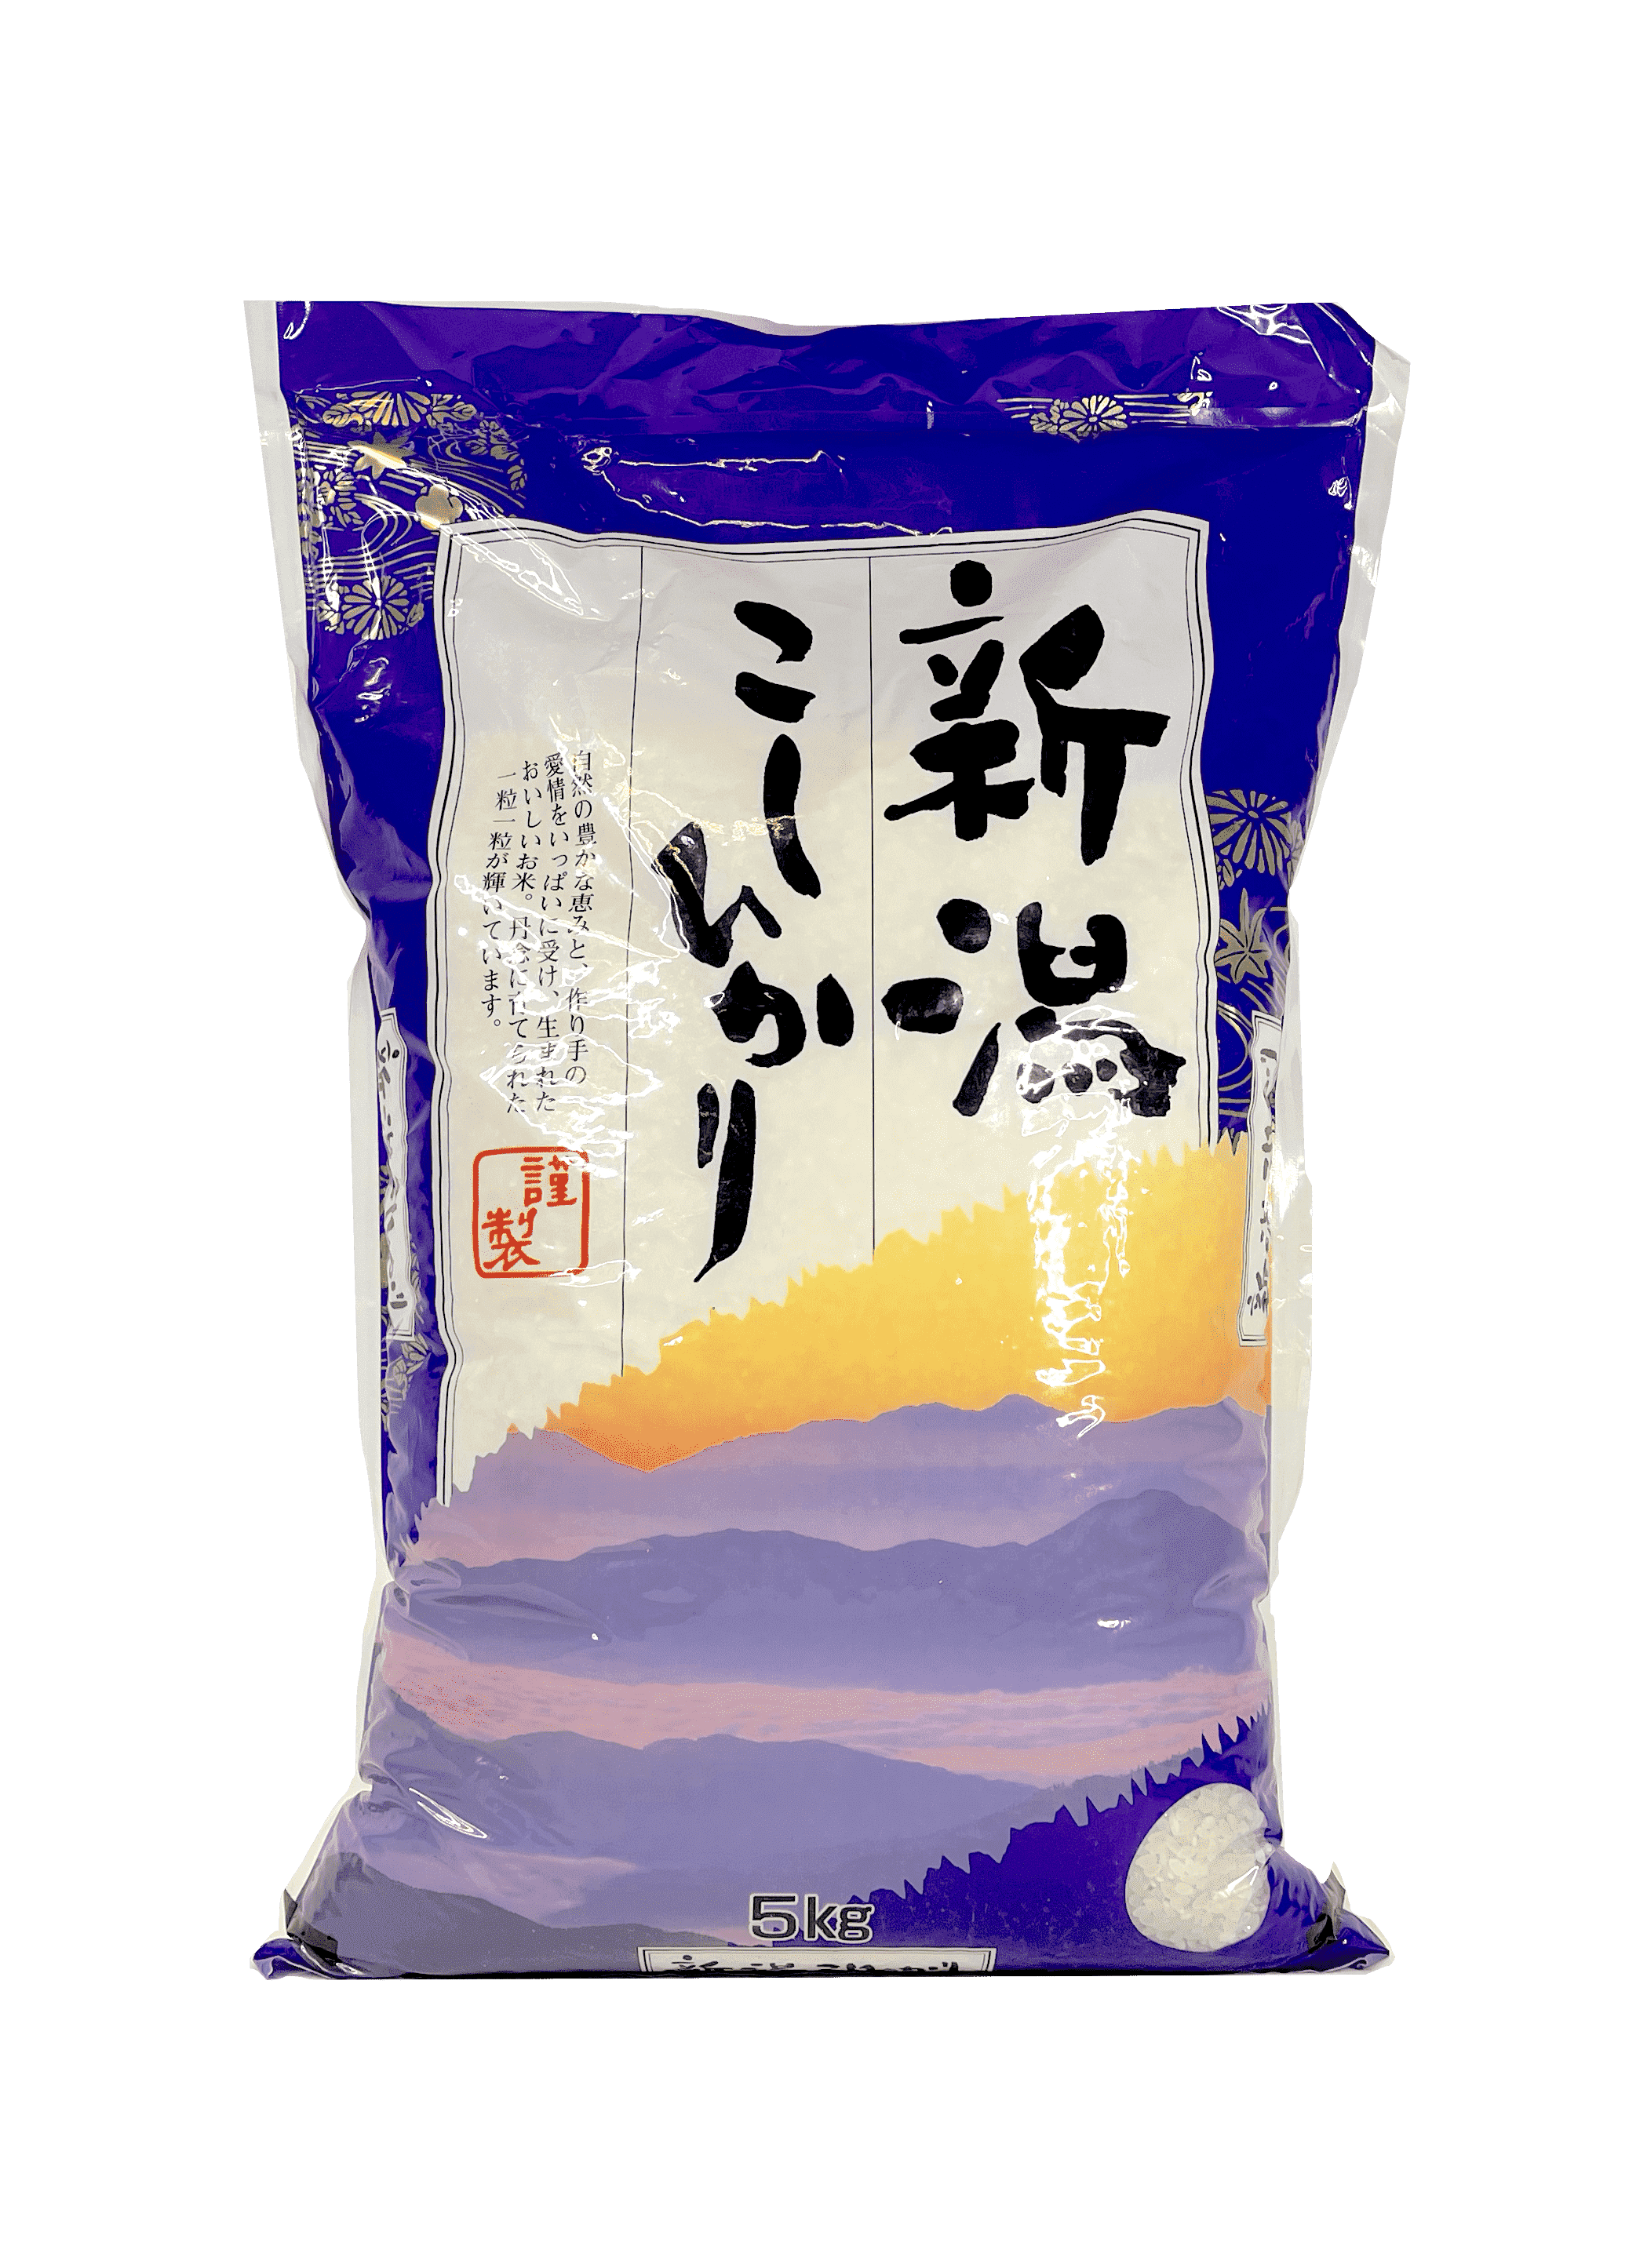 Ris Kitoku Shrinyo Niigata Koshihikari 5kg Japan